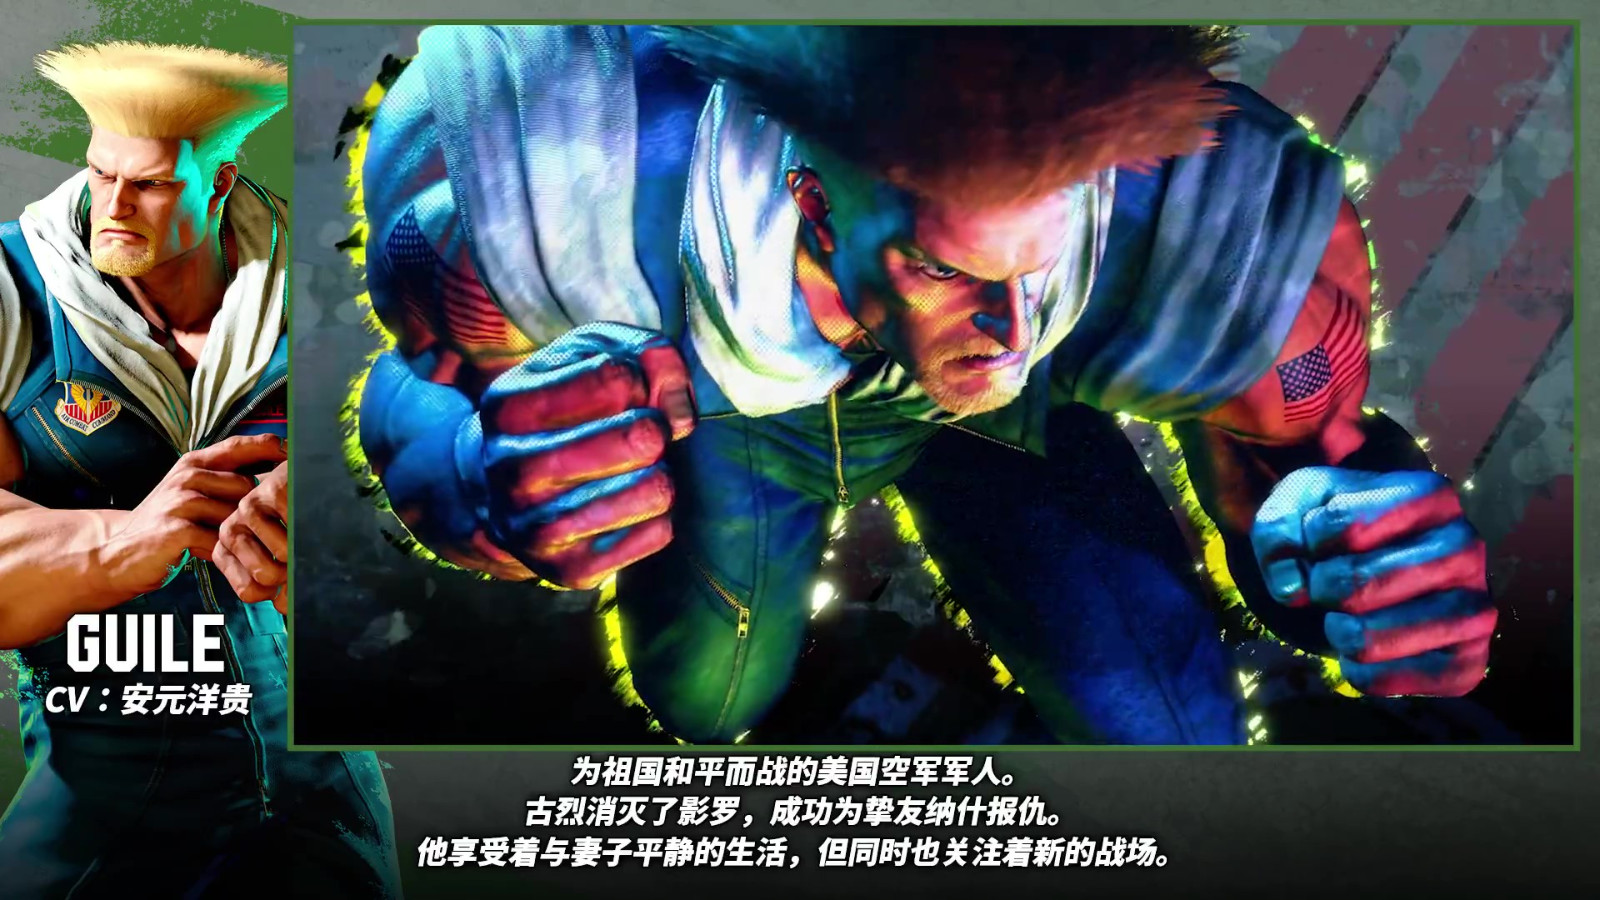 《街頭霸王6》古烈角色介紹 6月2日正式發售